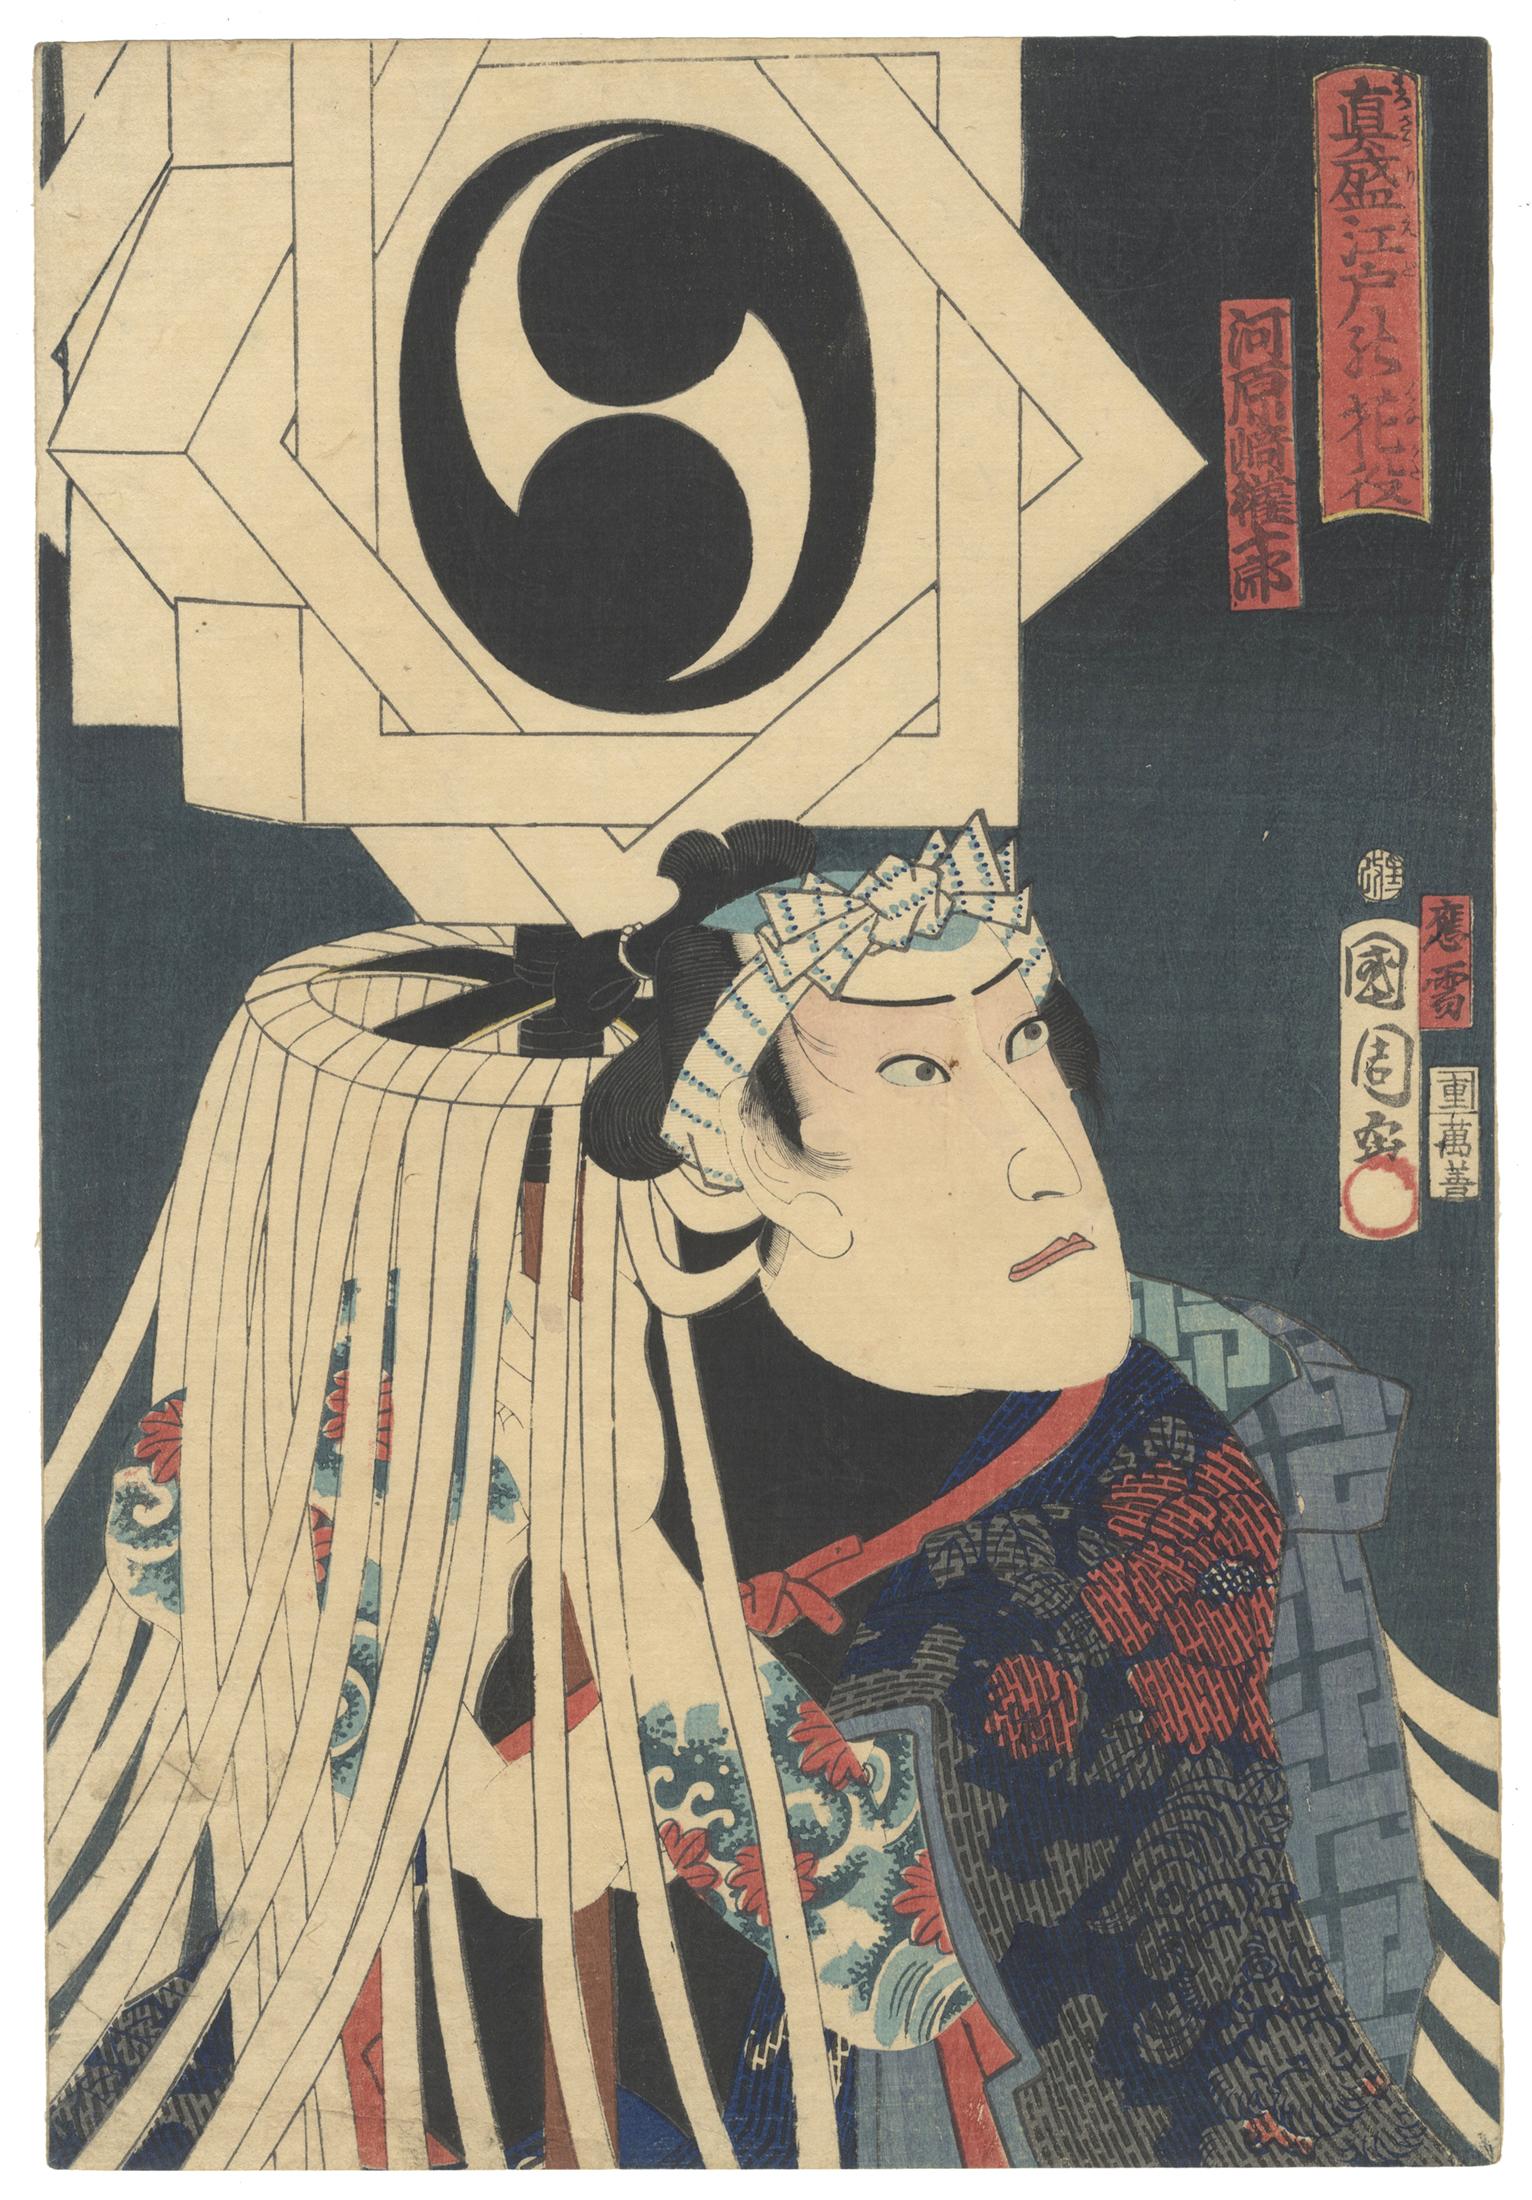 Toyohara Kunichika Figurative Print - Kunichika Toyohara, Tattoo, Japanese Woodblock Print, Ukiyo-e, Kabuki Actor